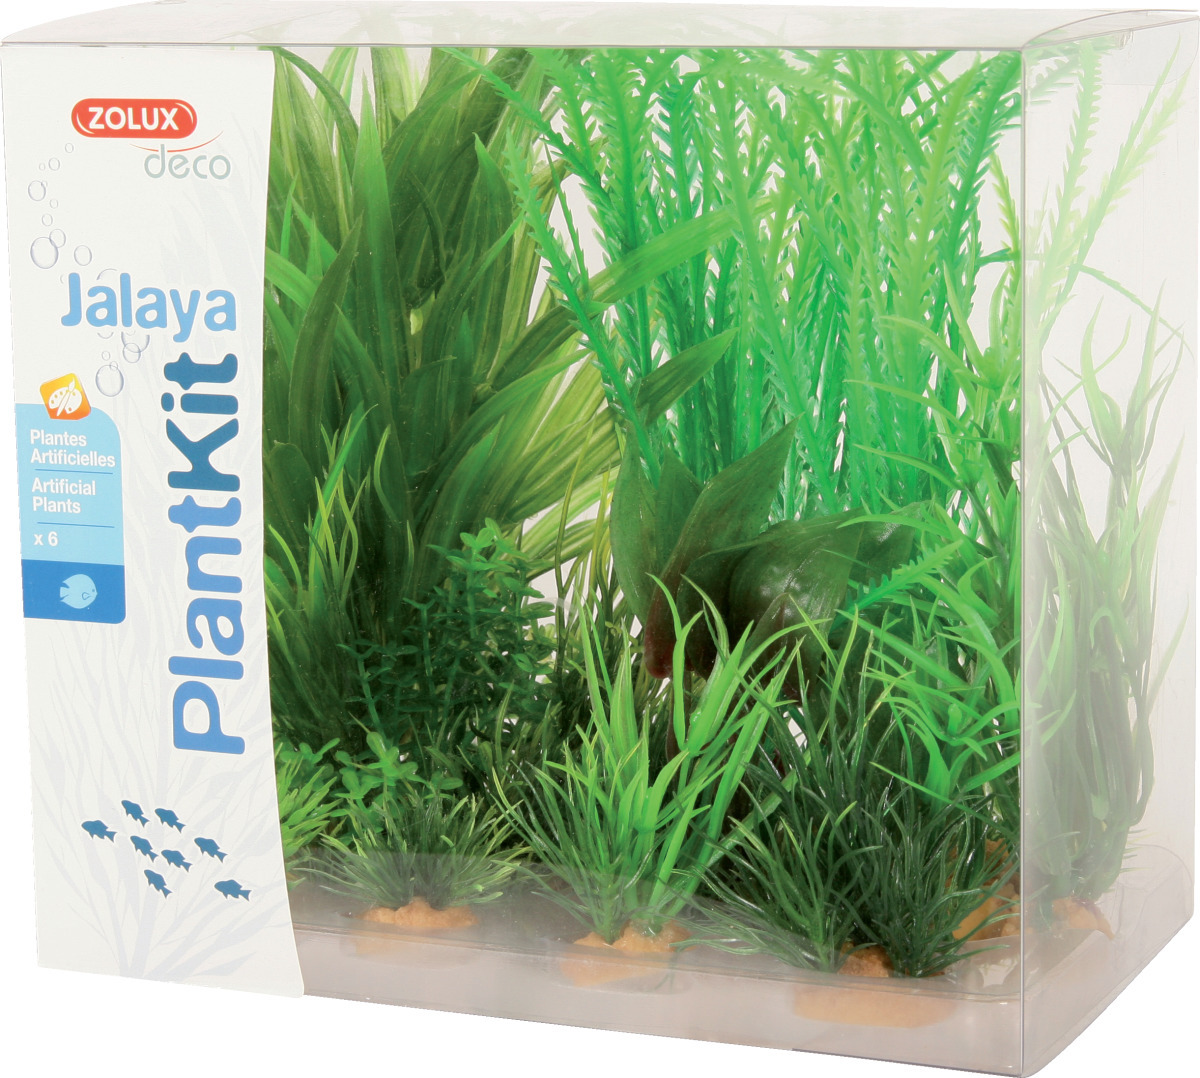 ZOLUX PlantKit Jalaya 1 - Lot de plantes artificielles pour aquarium